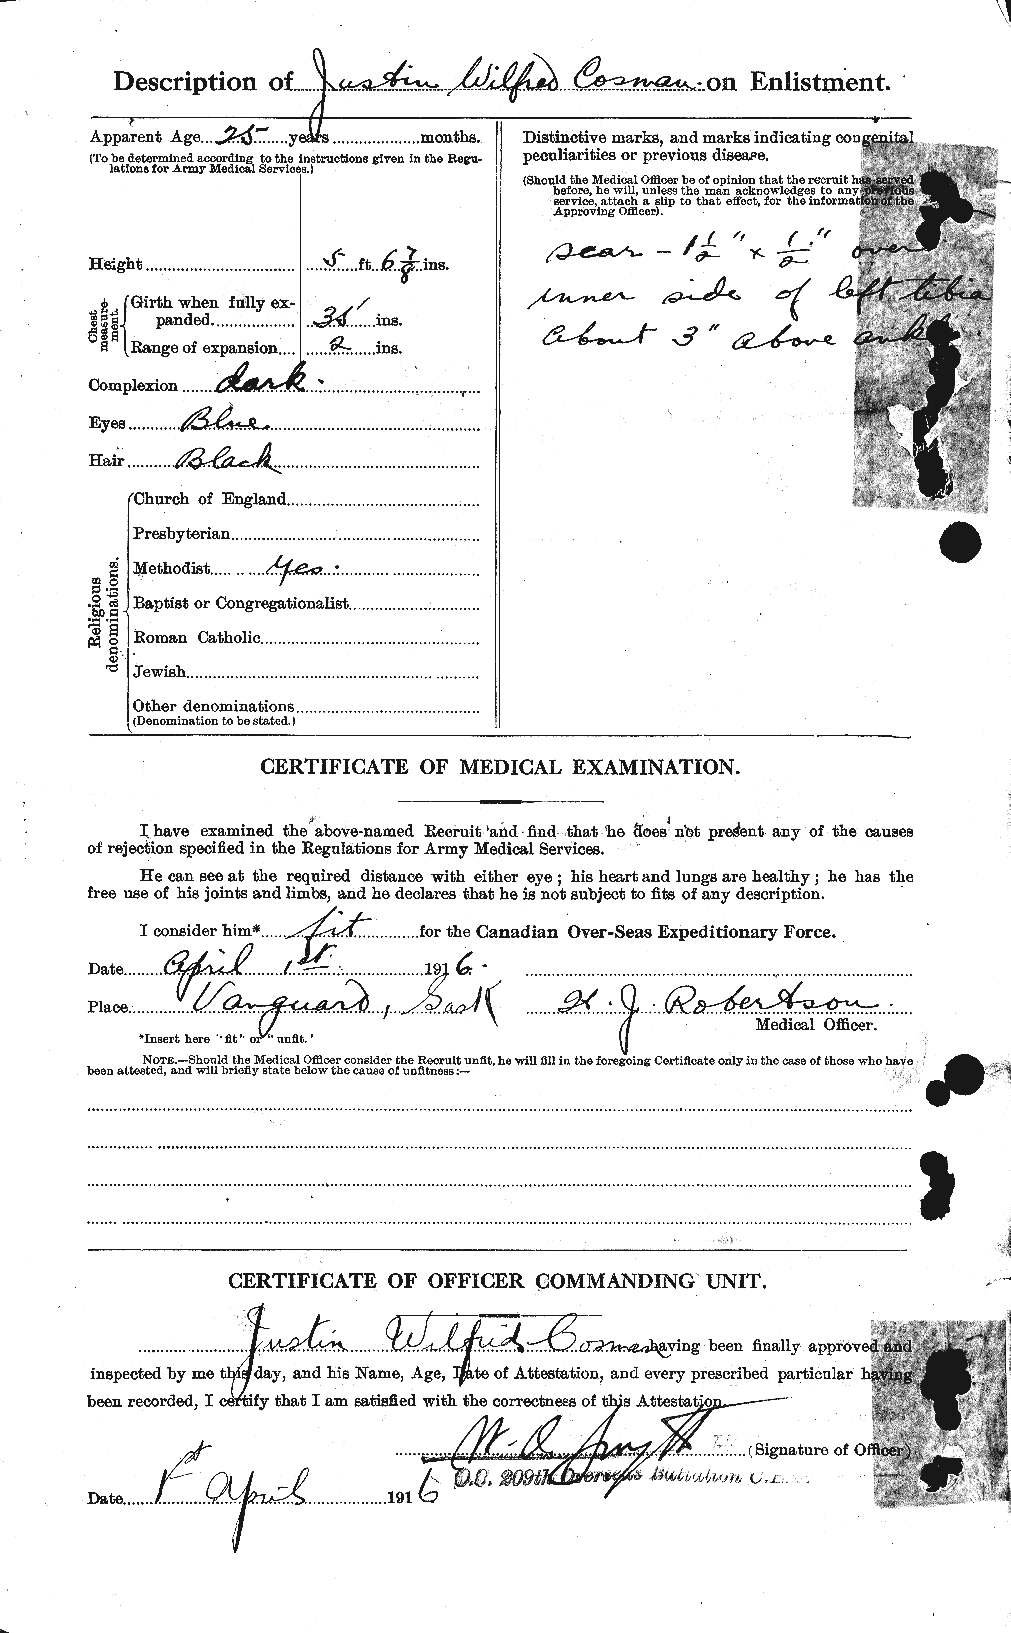 Dossiers du Personnel de la Première Guerre mondiale - CEC 057604b